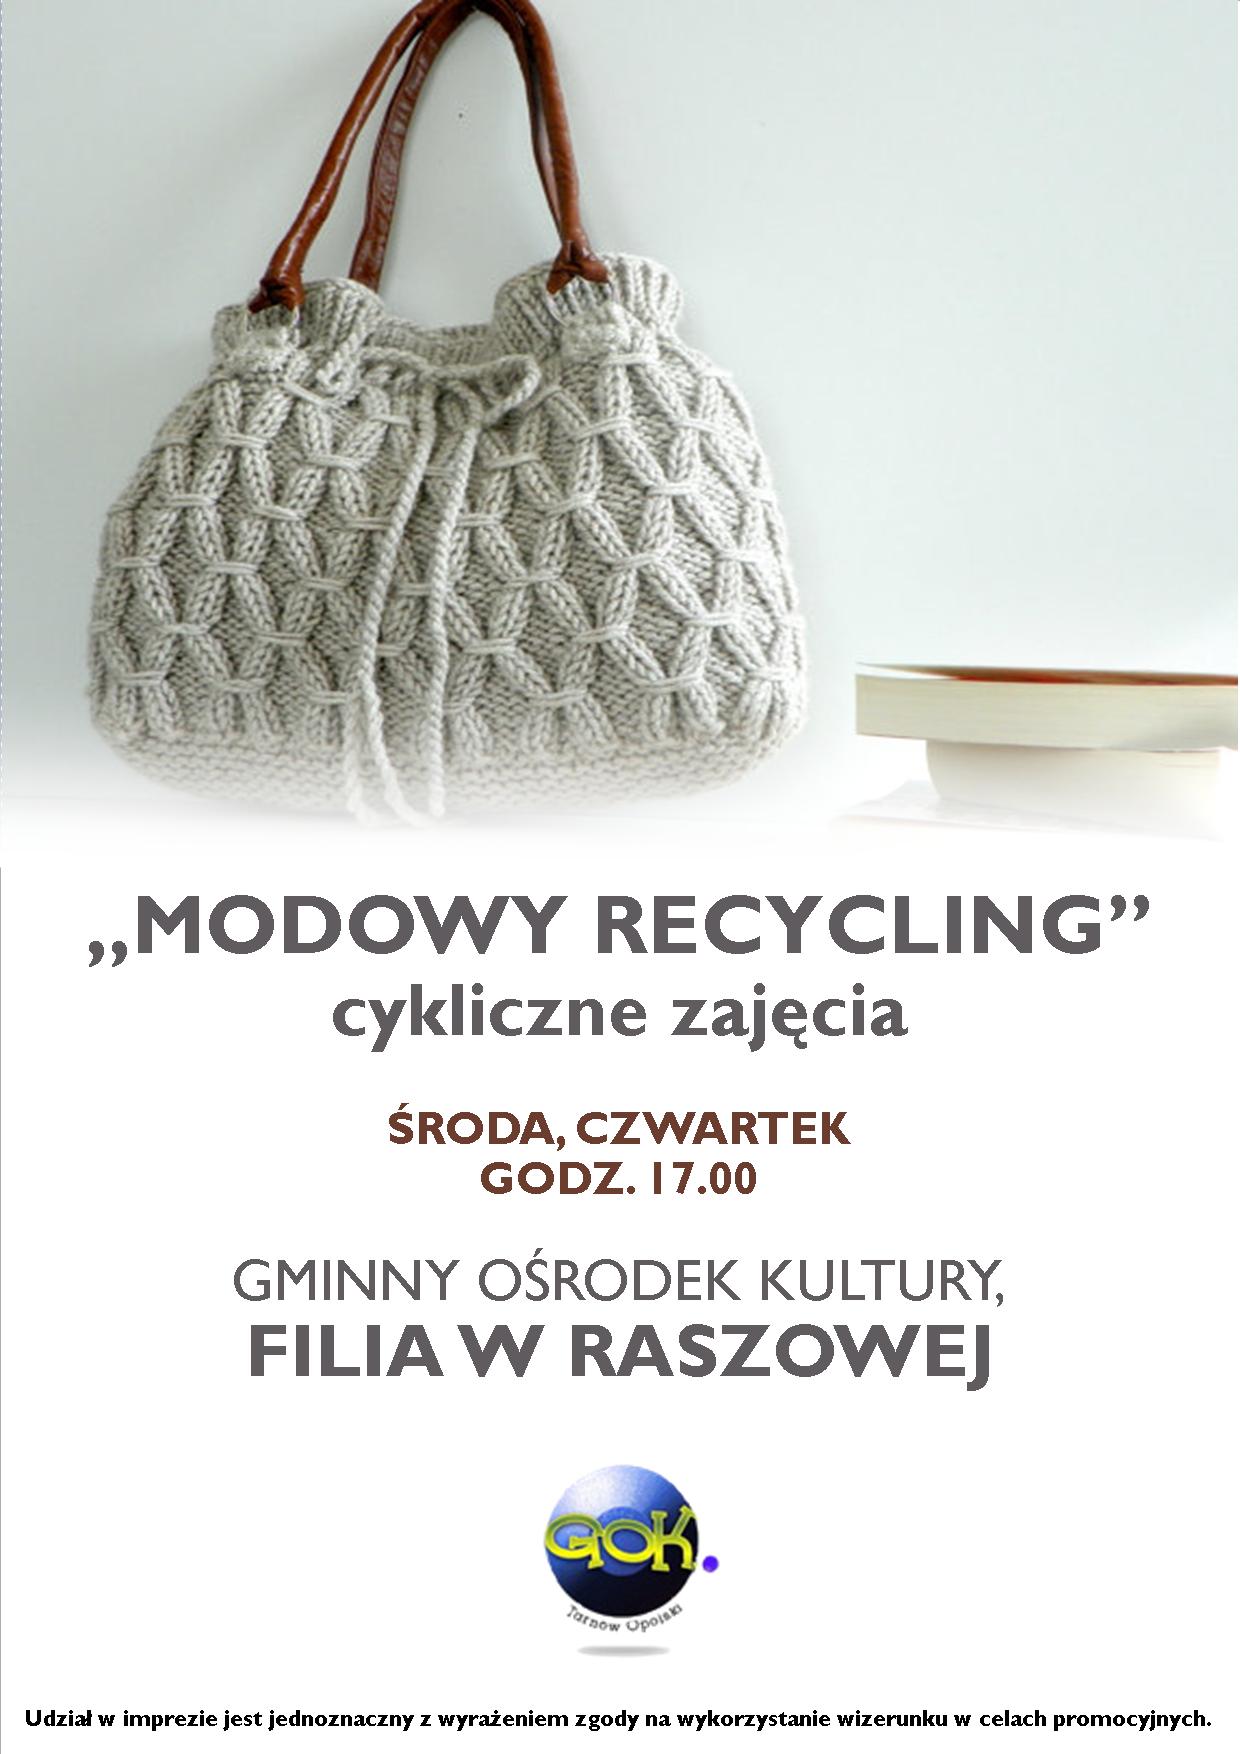 Tarnów Opolski. Modowy recykling w Raszowej